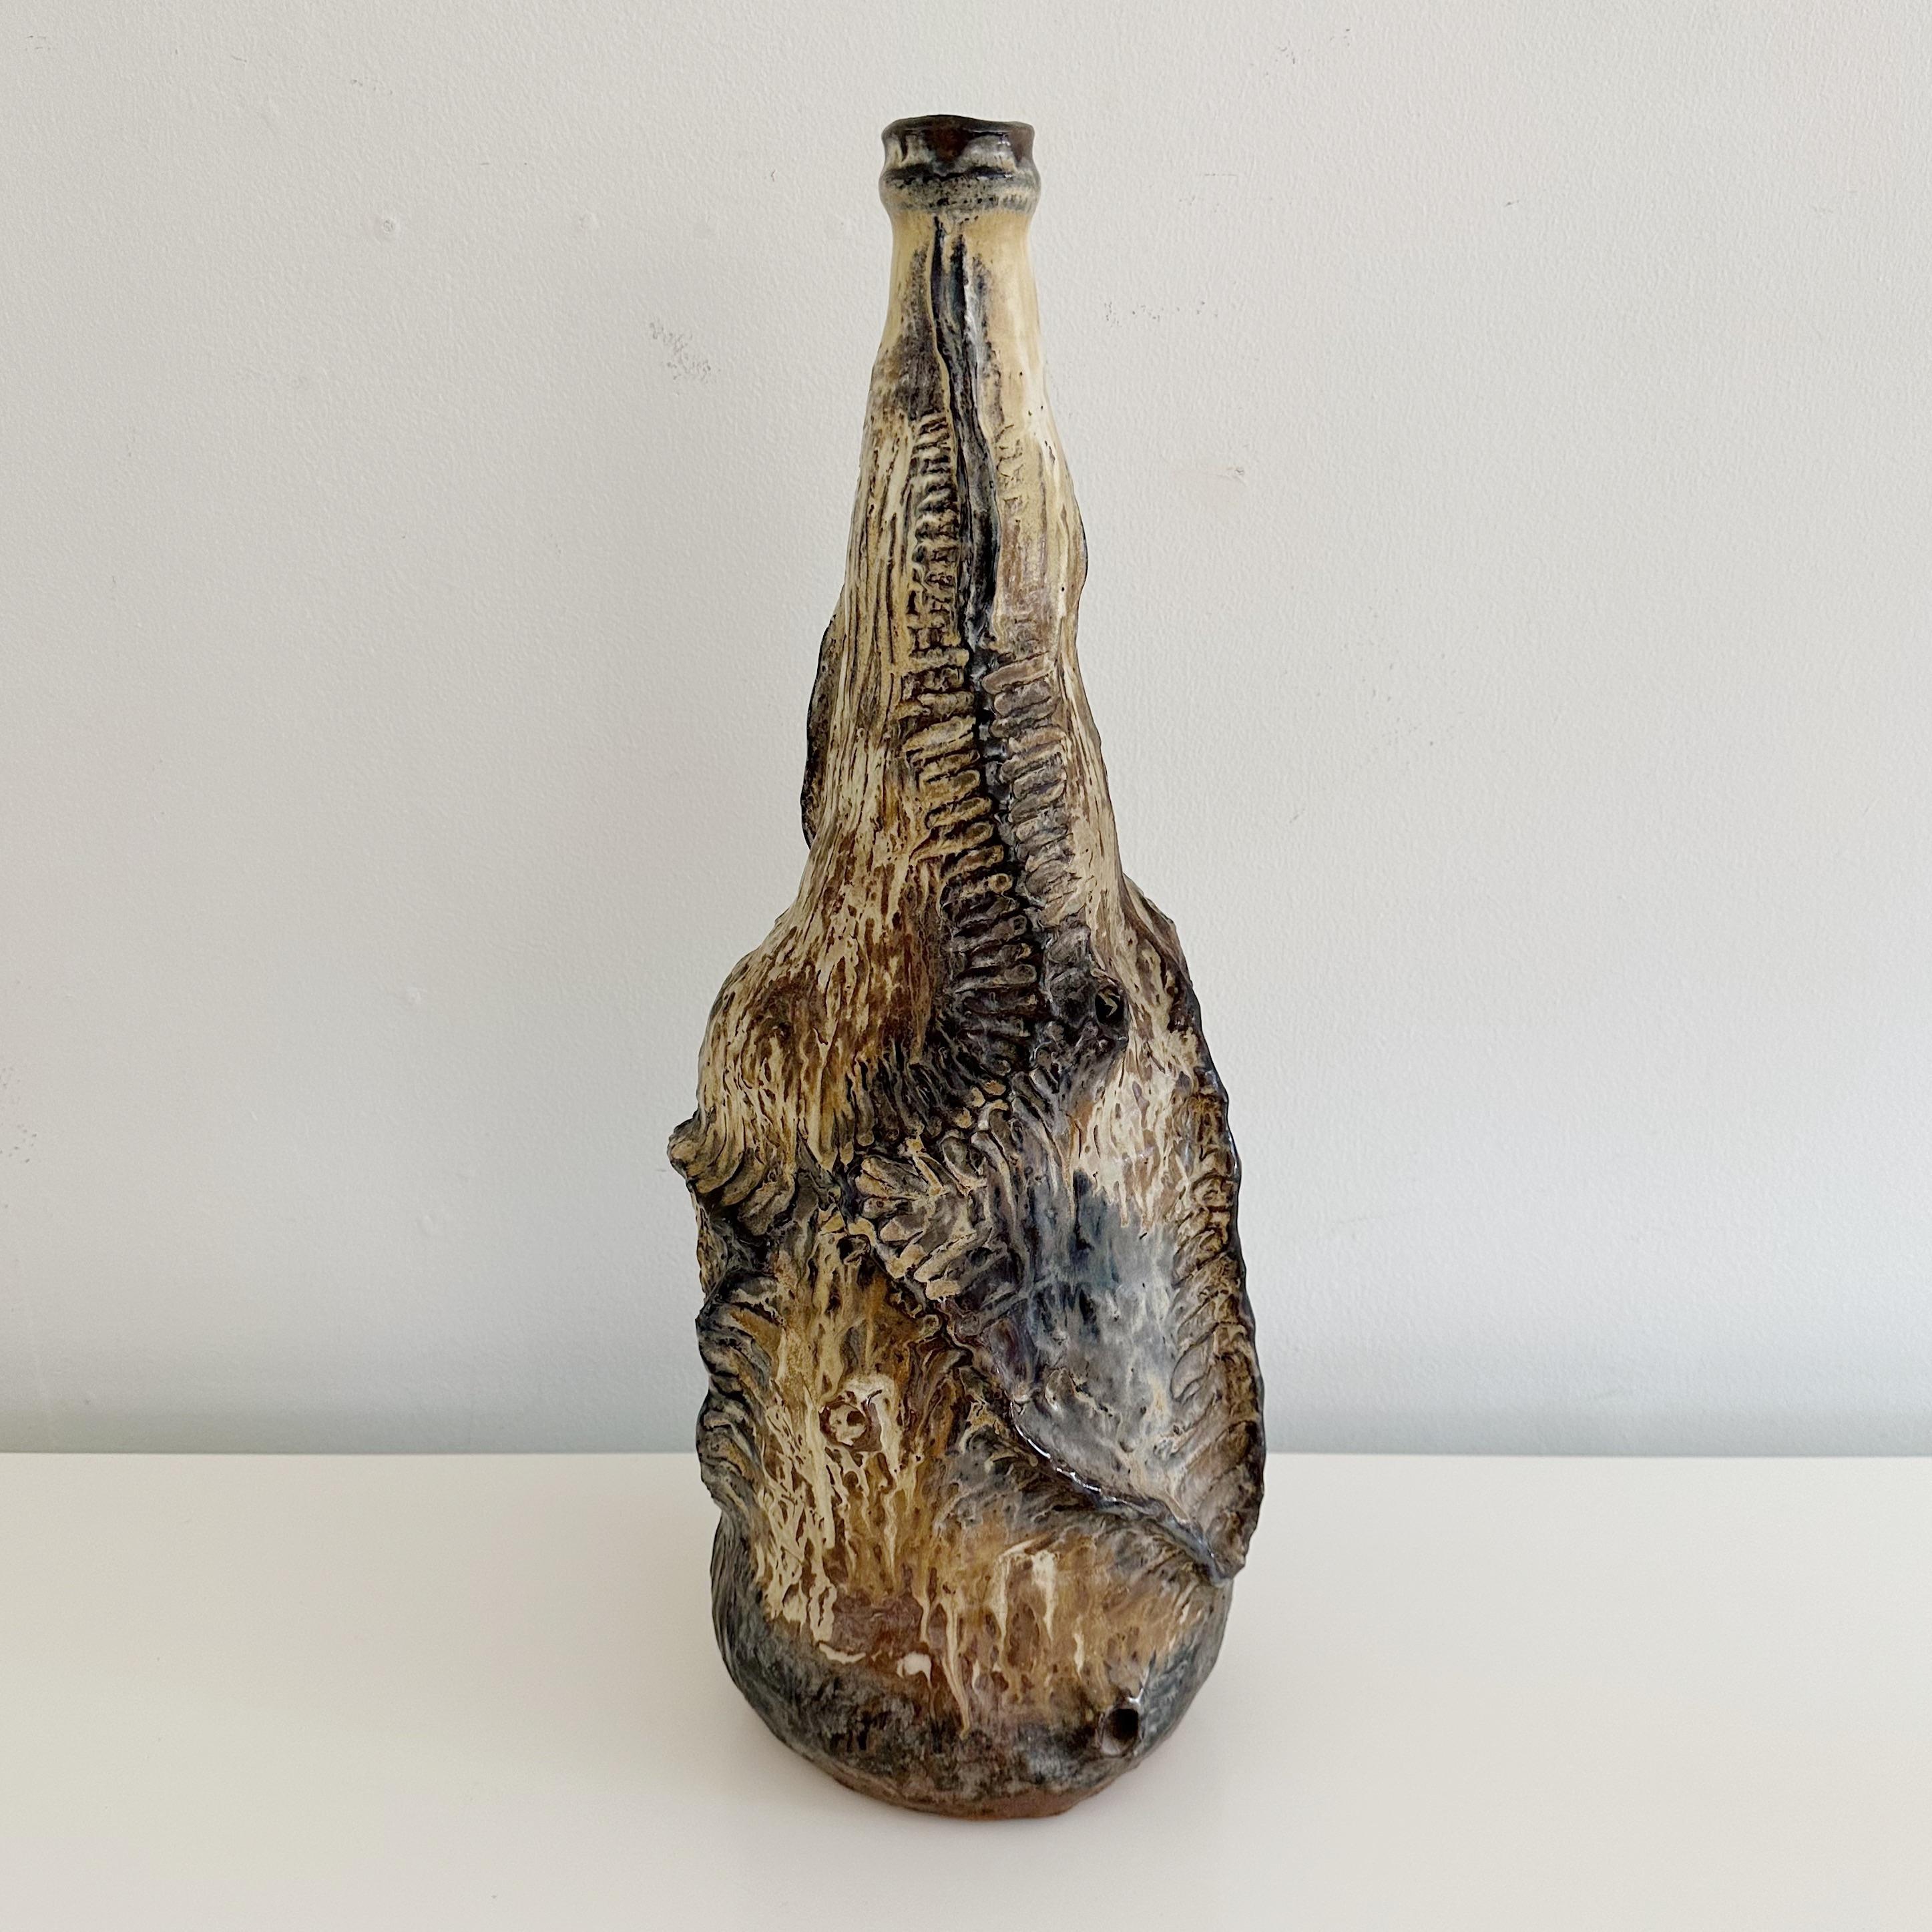 Brutalist Stil große organische Vintage Studio Terrakotta Keramik abstrakte Form Flaschenhals Vase, unsigned aus der Mitte des 20. Jahrhunderts. In organischen Erdtönen von Braun, Creme, Hellbraun und Umbra.